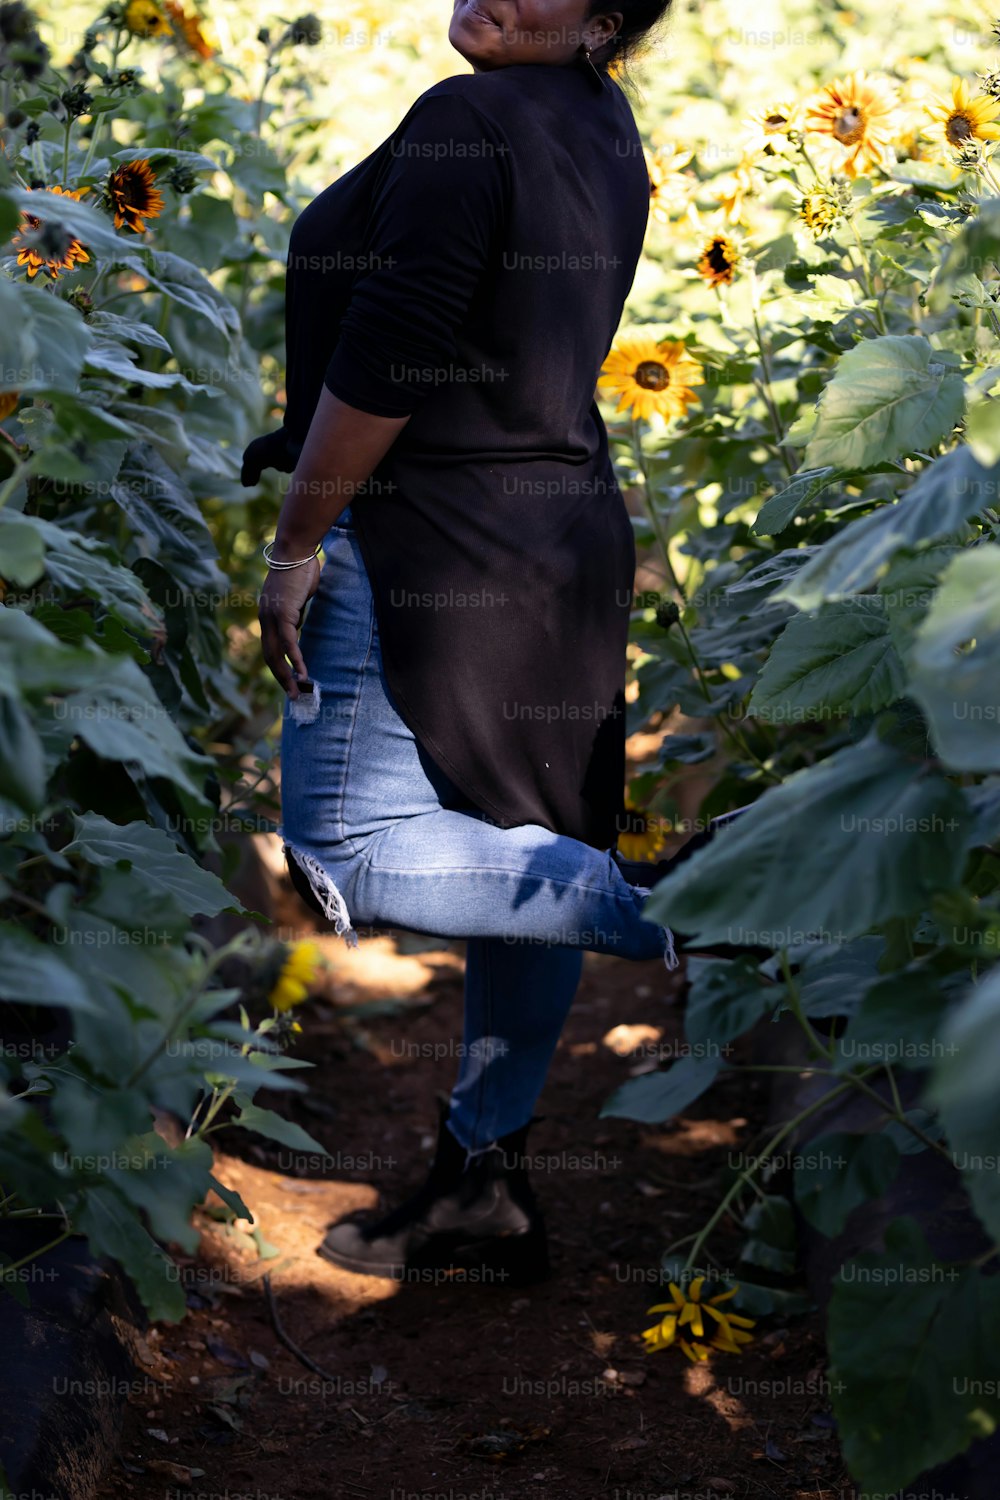 Une femme debout dans un champ de tournesols